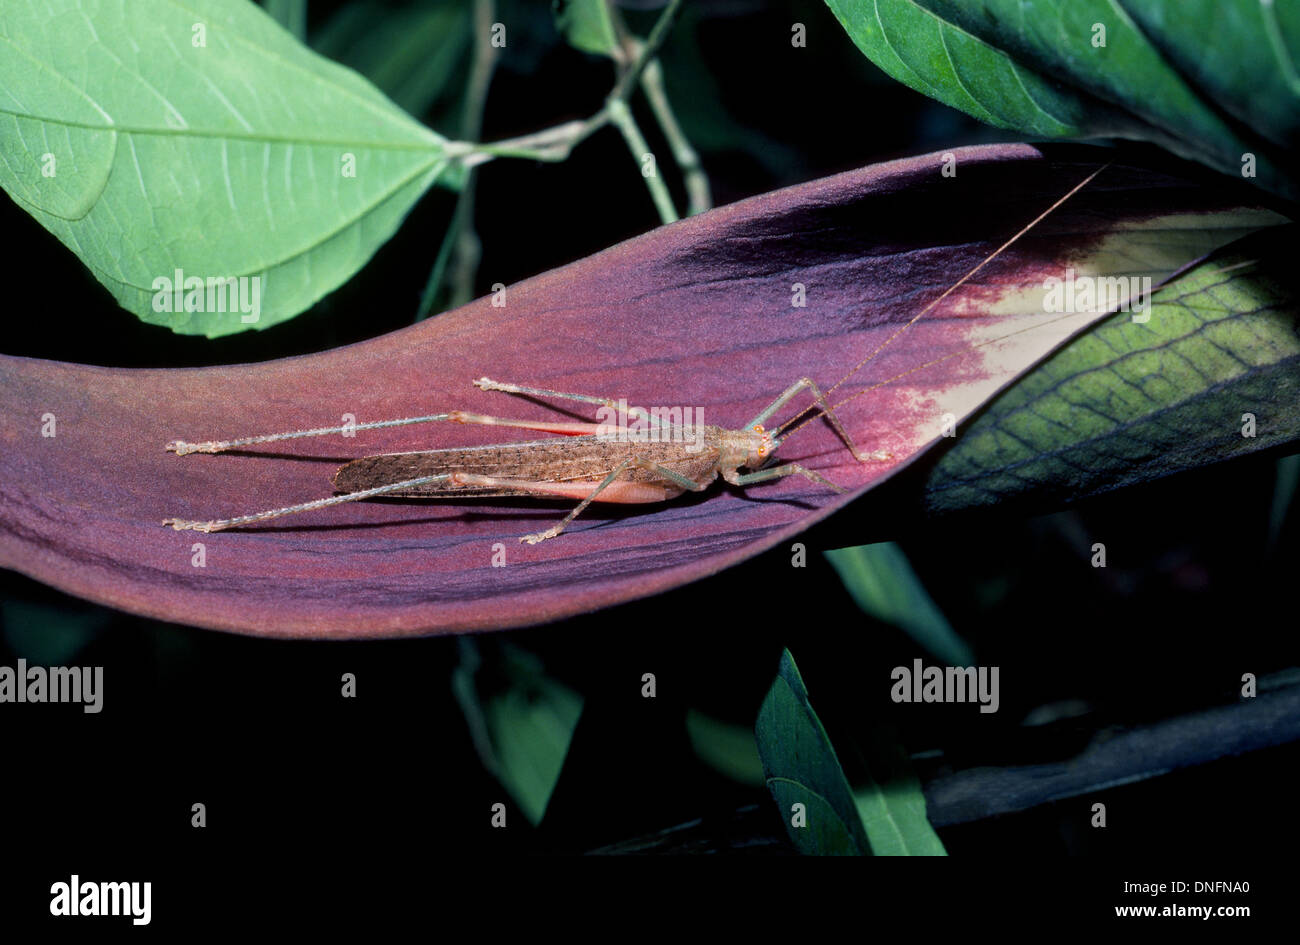 Seis Patas de insectos tropicales con largas antenas y alas plegadas descansa sobre una hoja púrpura en la zona de selva amazónica de Ecuador en América del Sur. Foto de stock